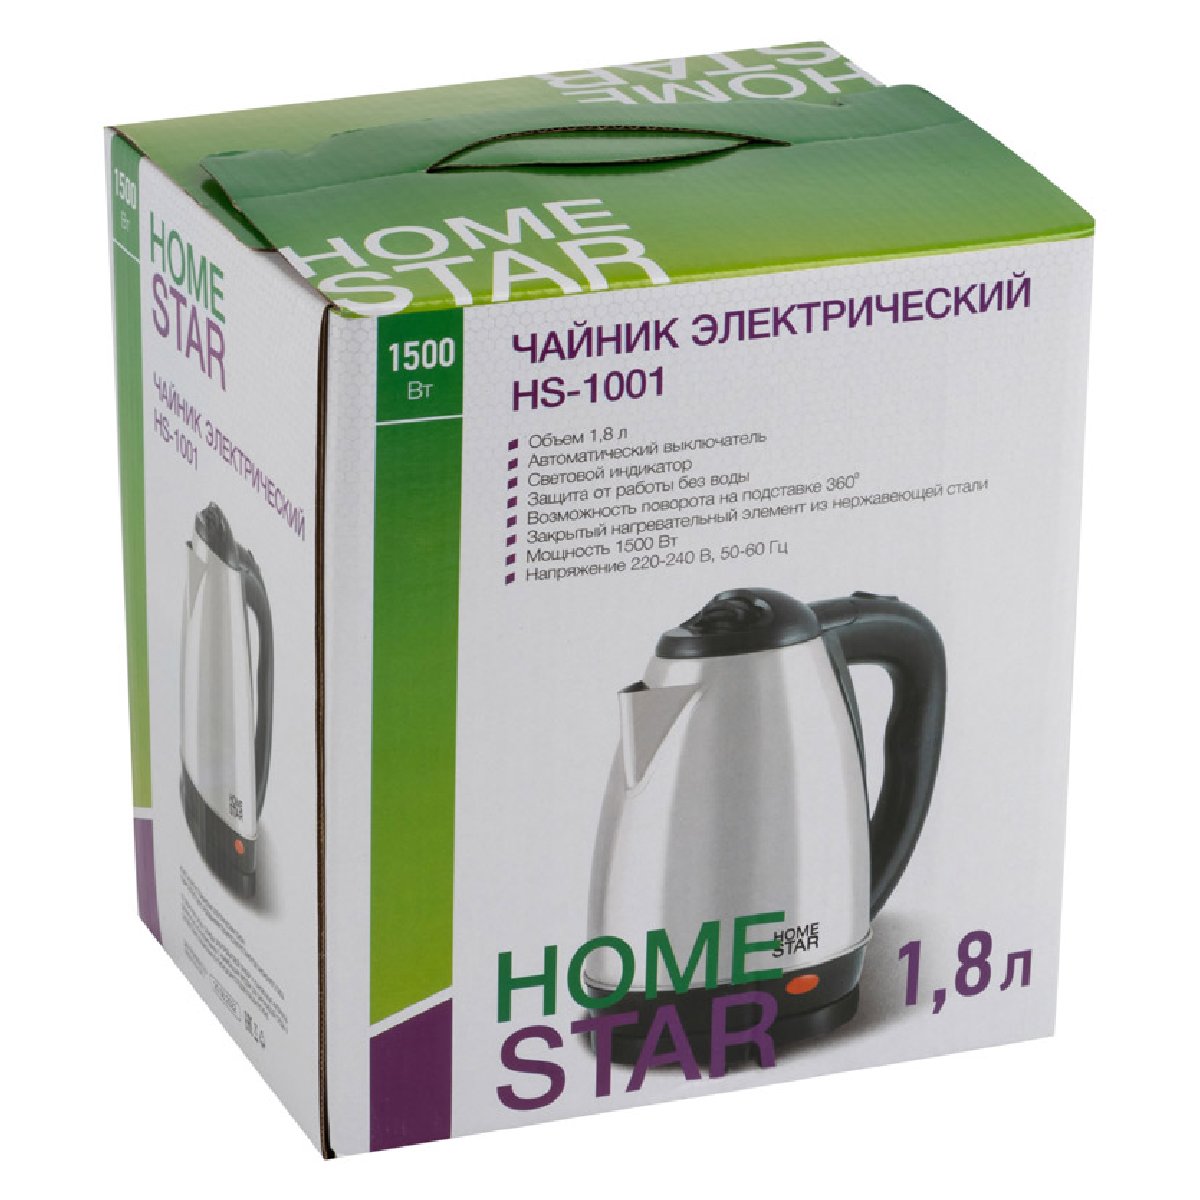 Homestar HS-1001 чайник электрический дисковый, 1.8л, 1500Вт, нержавеющая сталь (000450)